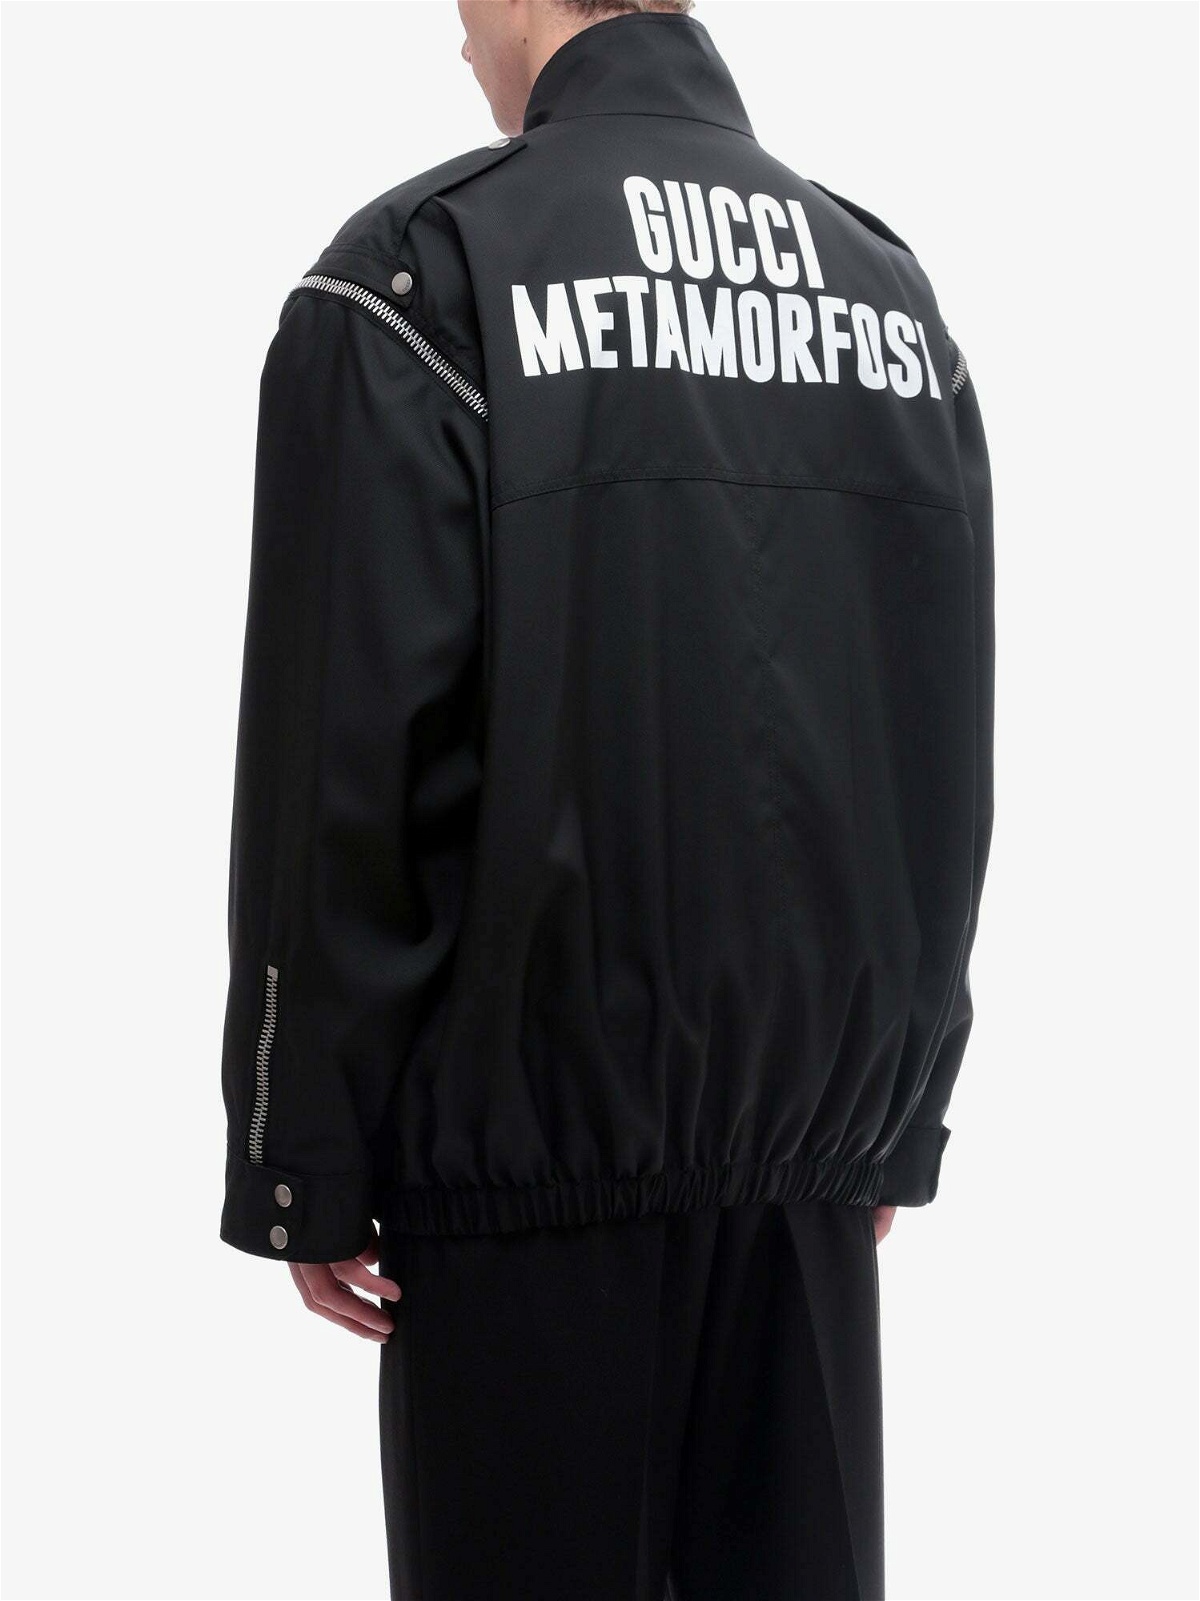 Gucci Jacket Black Mens Gucci